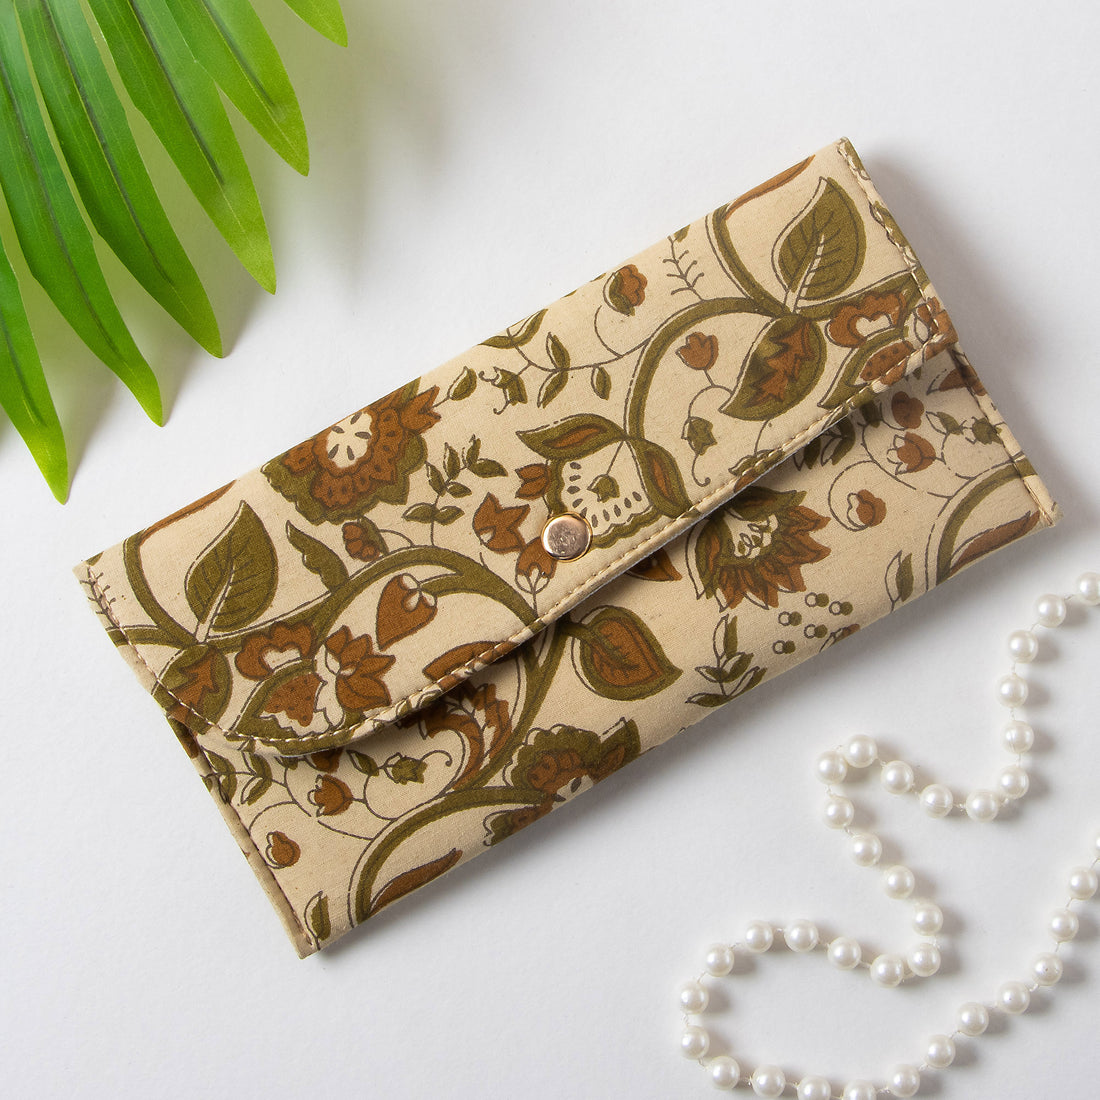 Best Multi Uses Handmade Women's Clutch Wallet